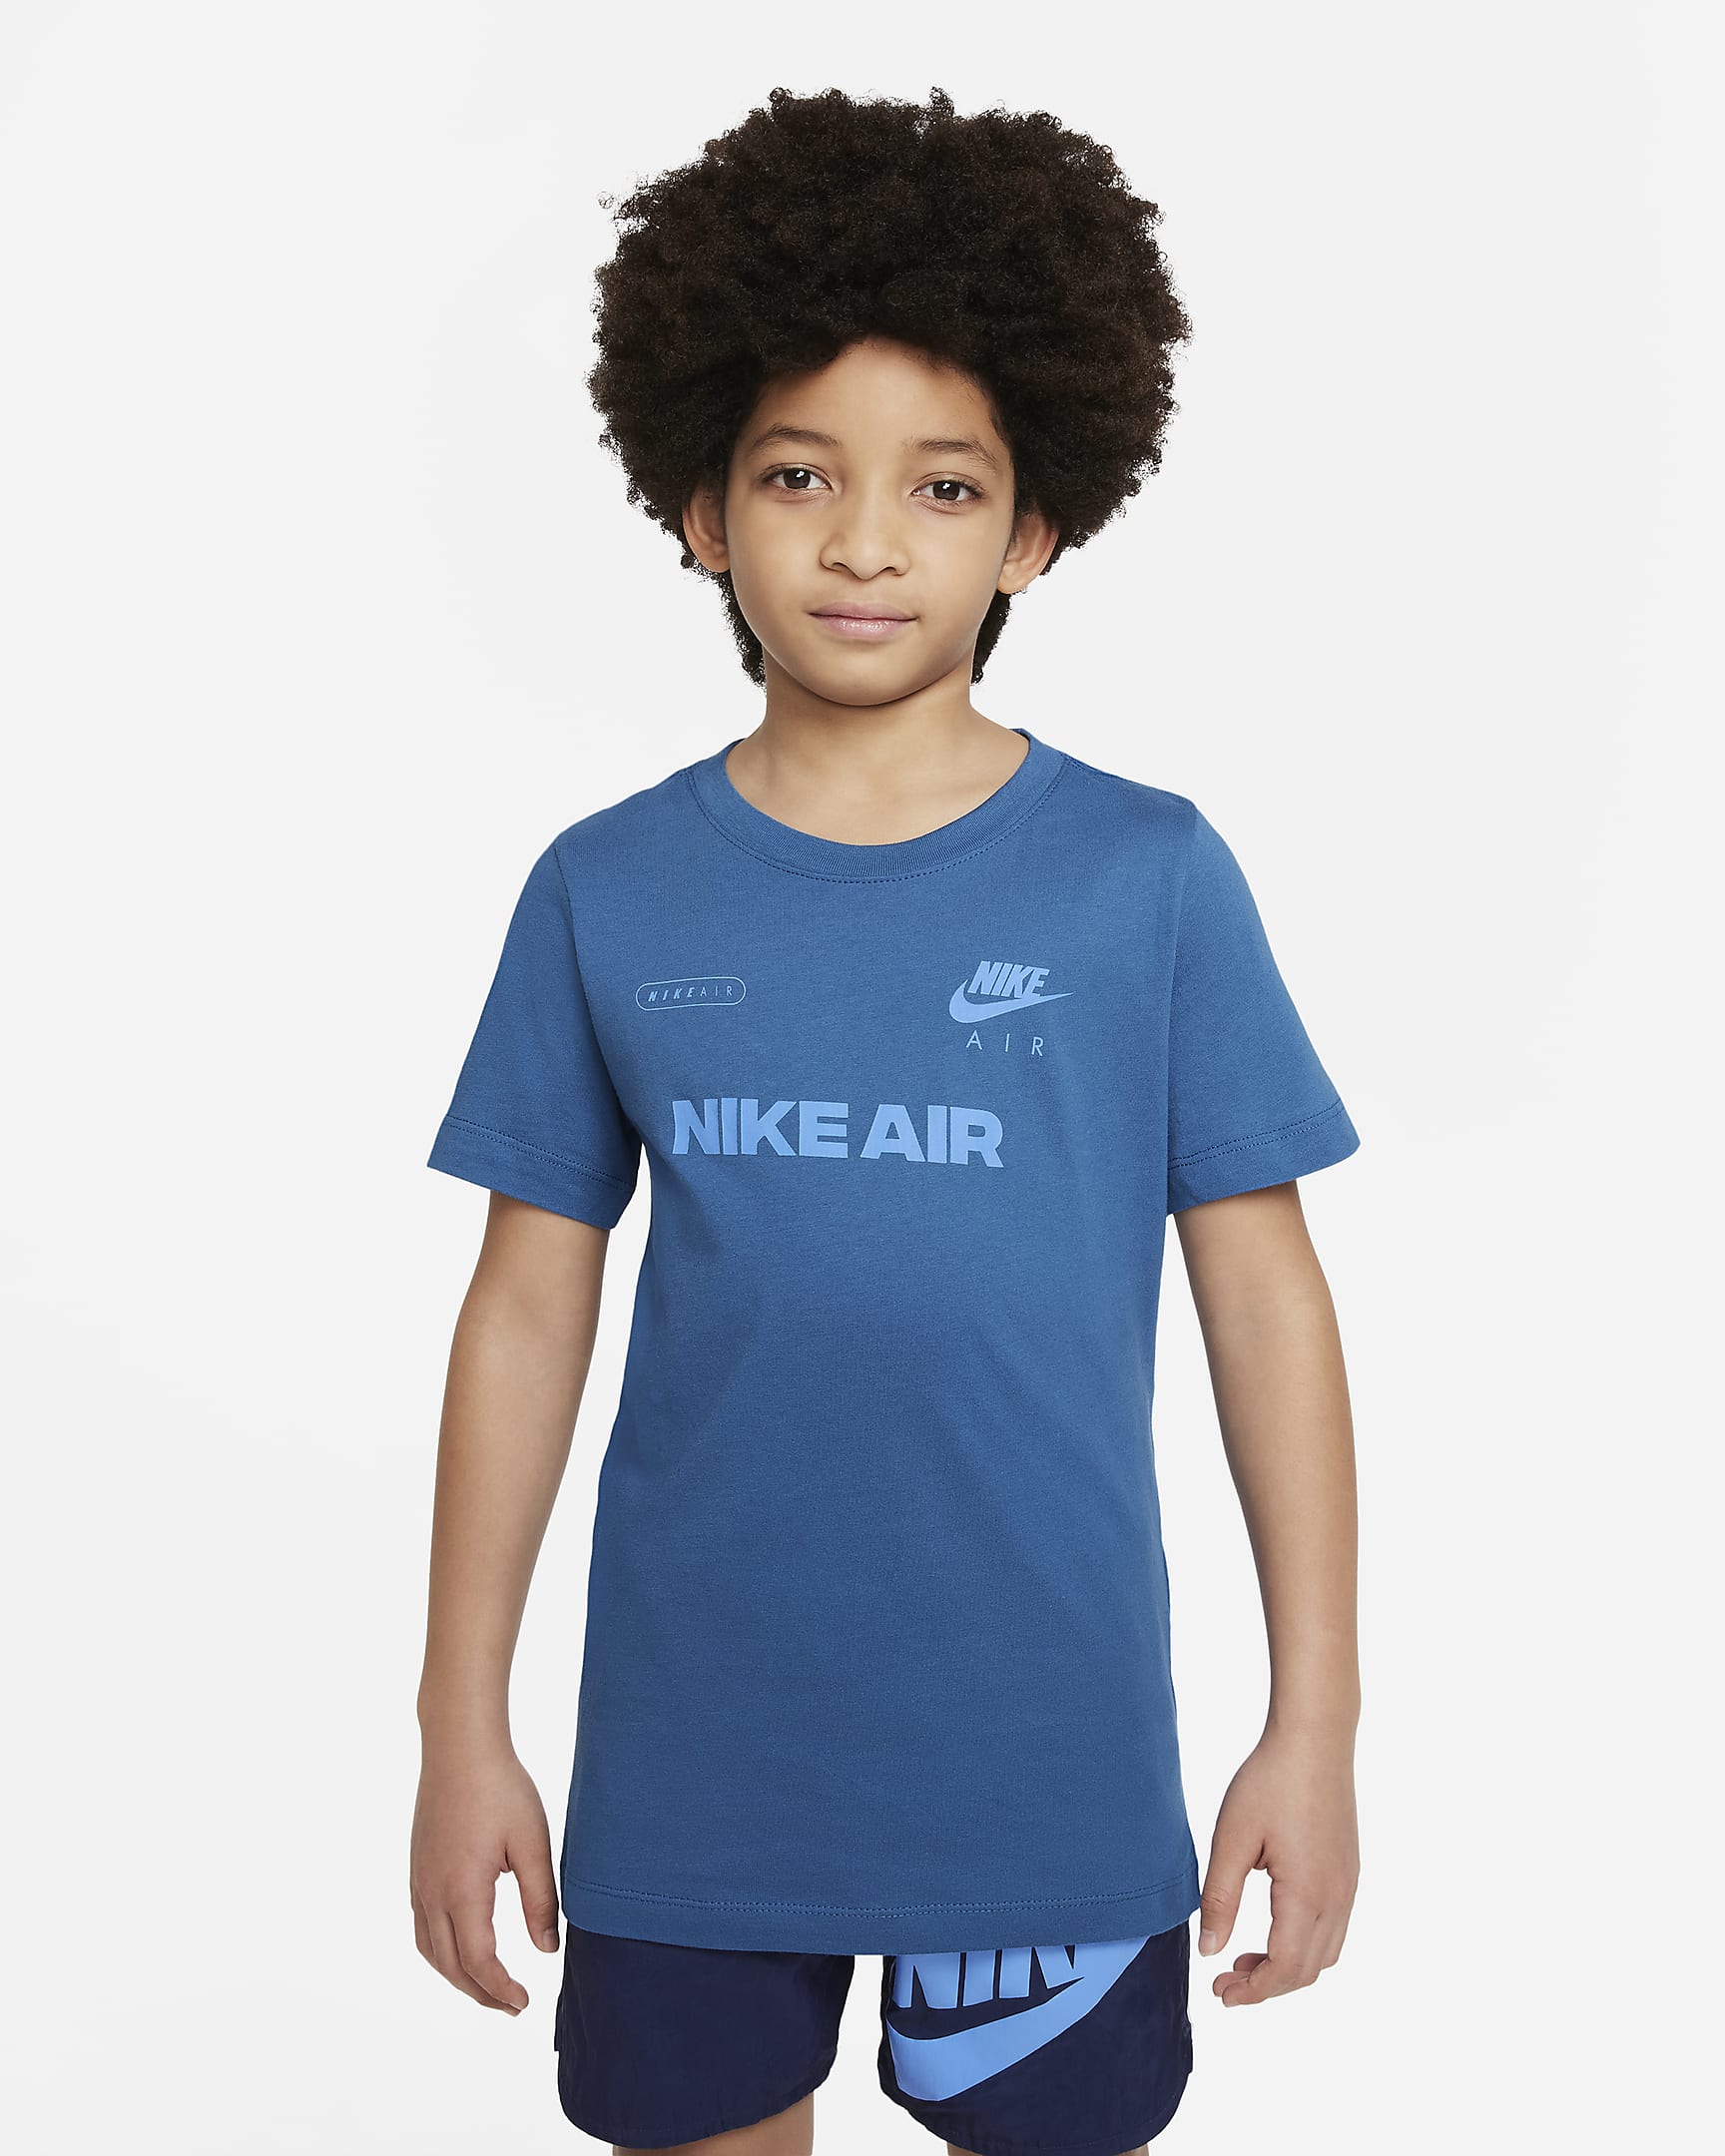 Nike Air Older Kids' (Boys') T-Shirt. Nike SG